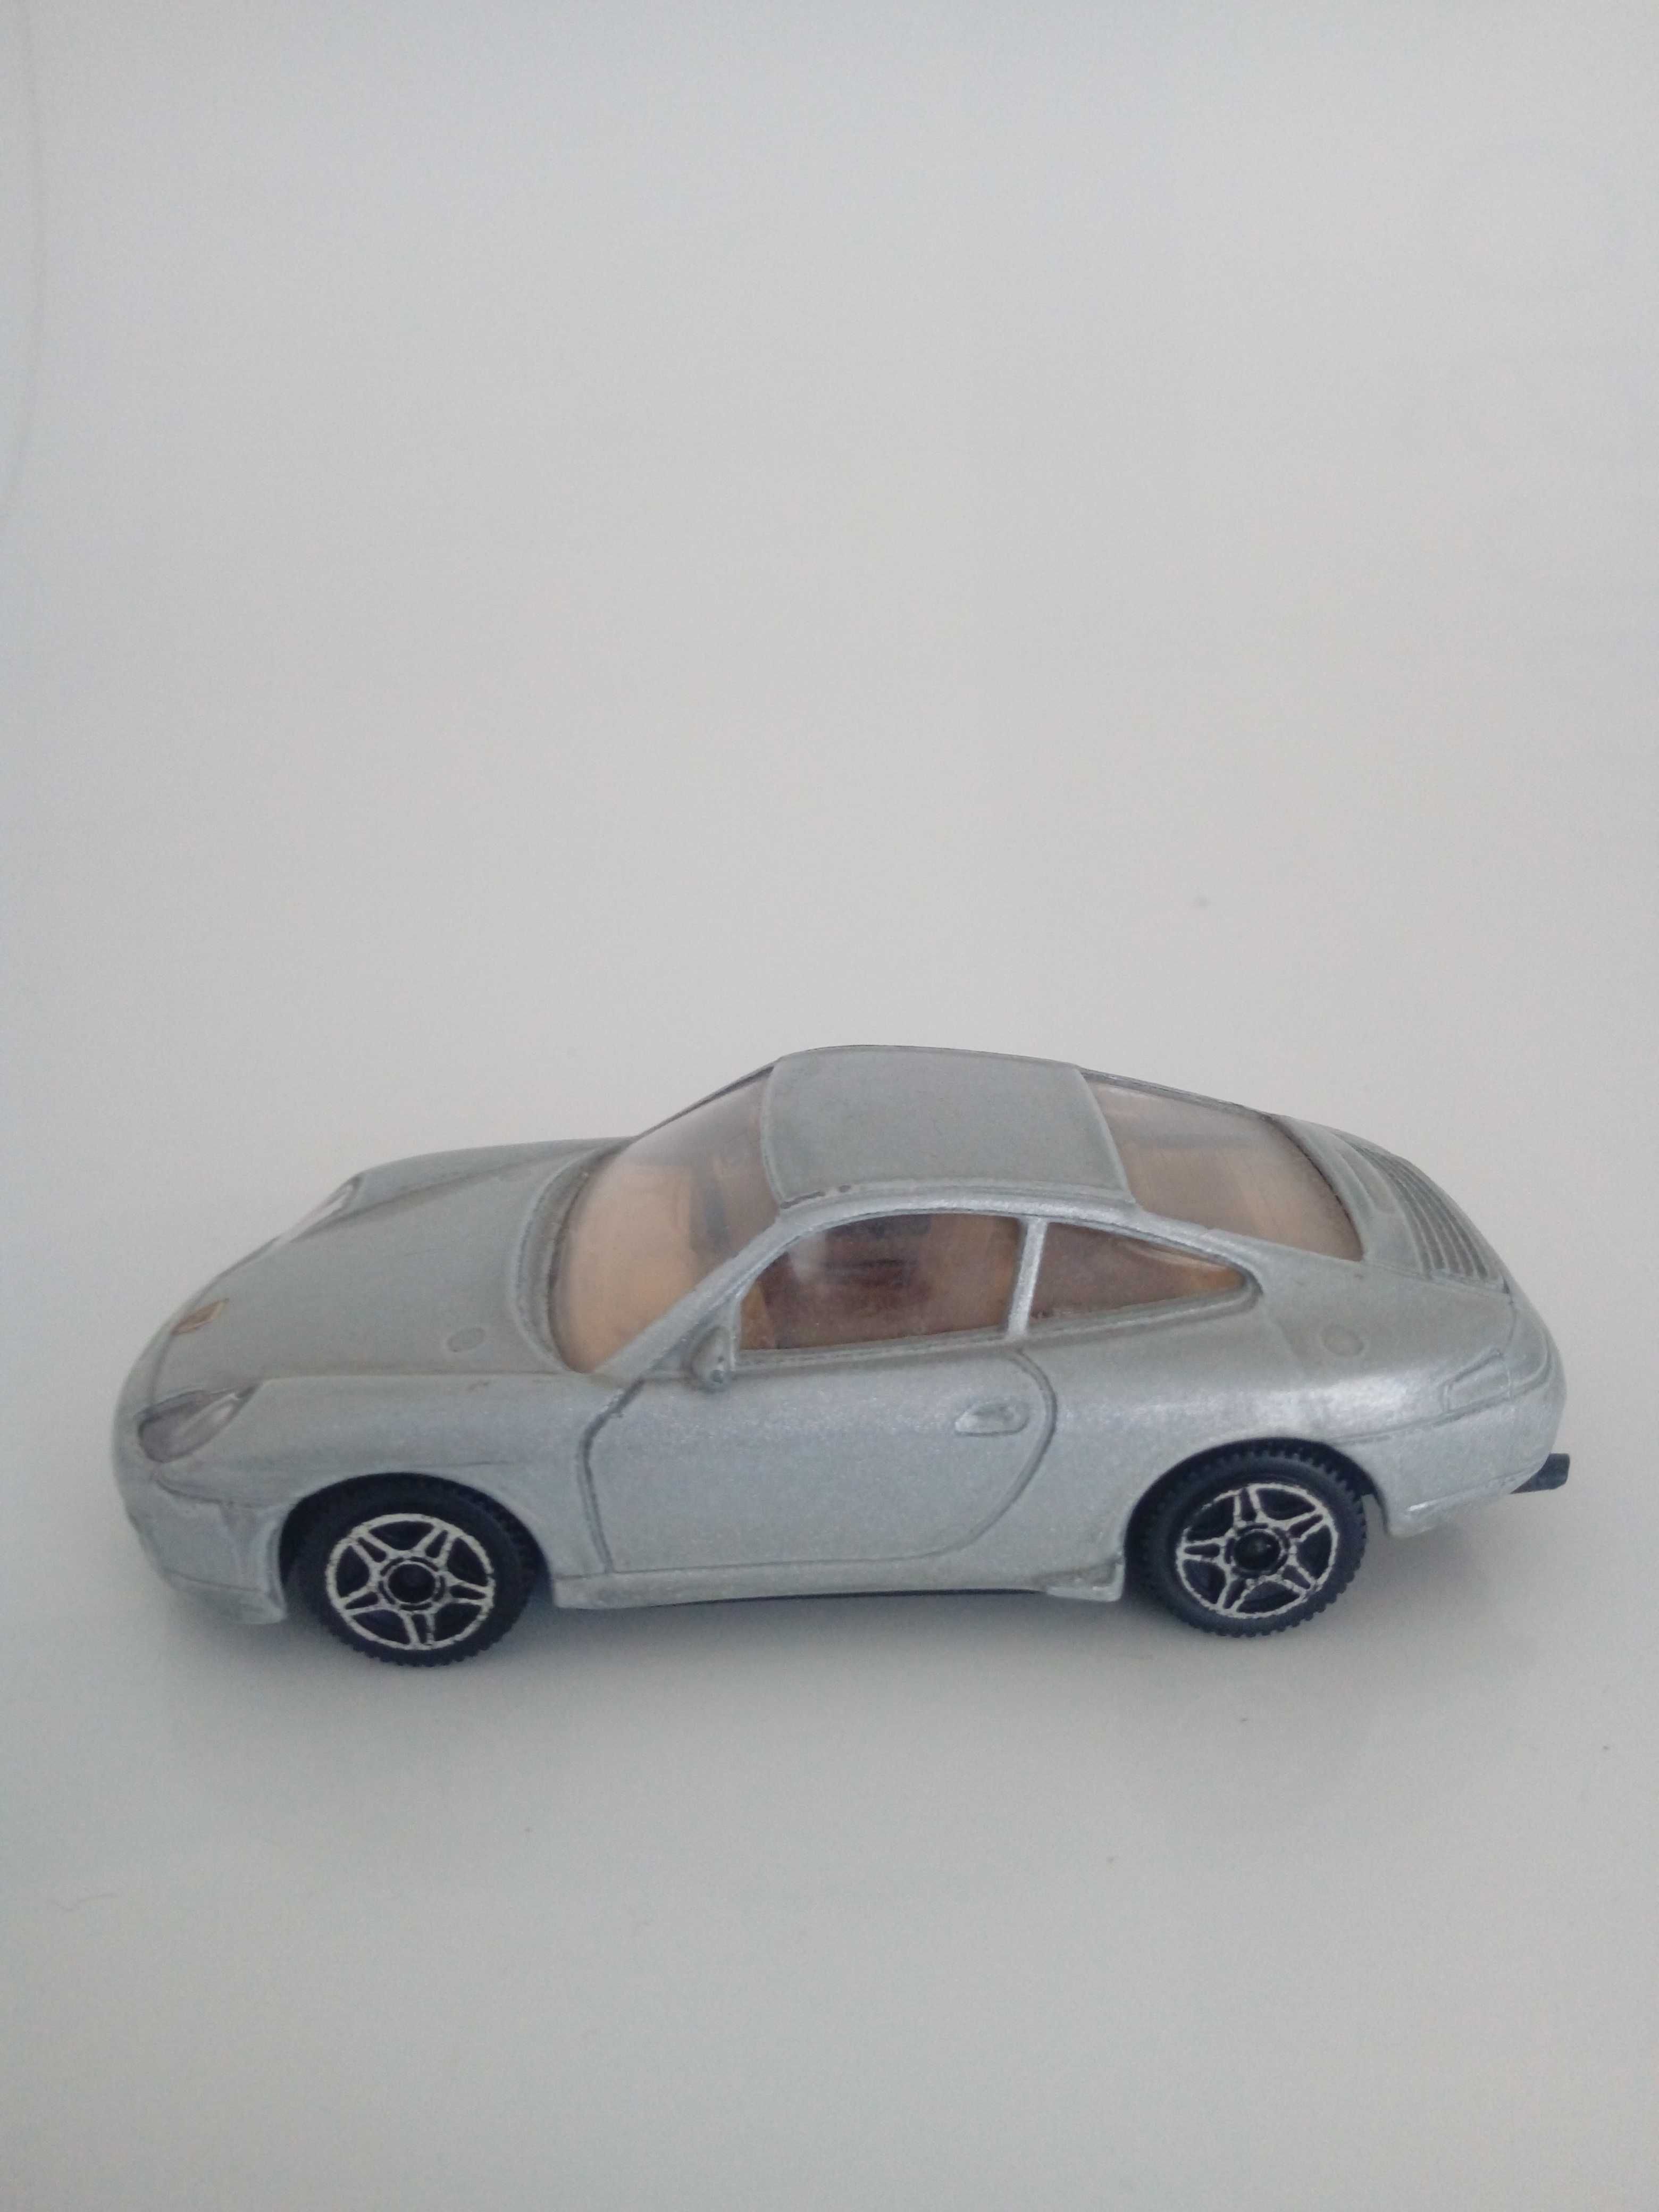 Carro miniatura de colecção - Brincar